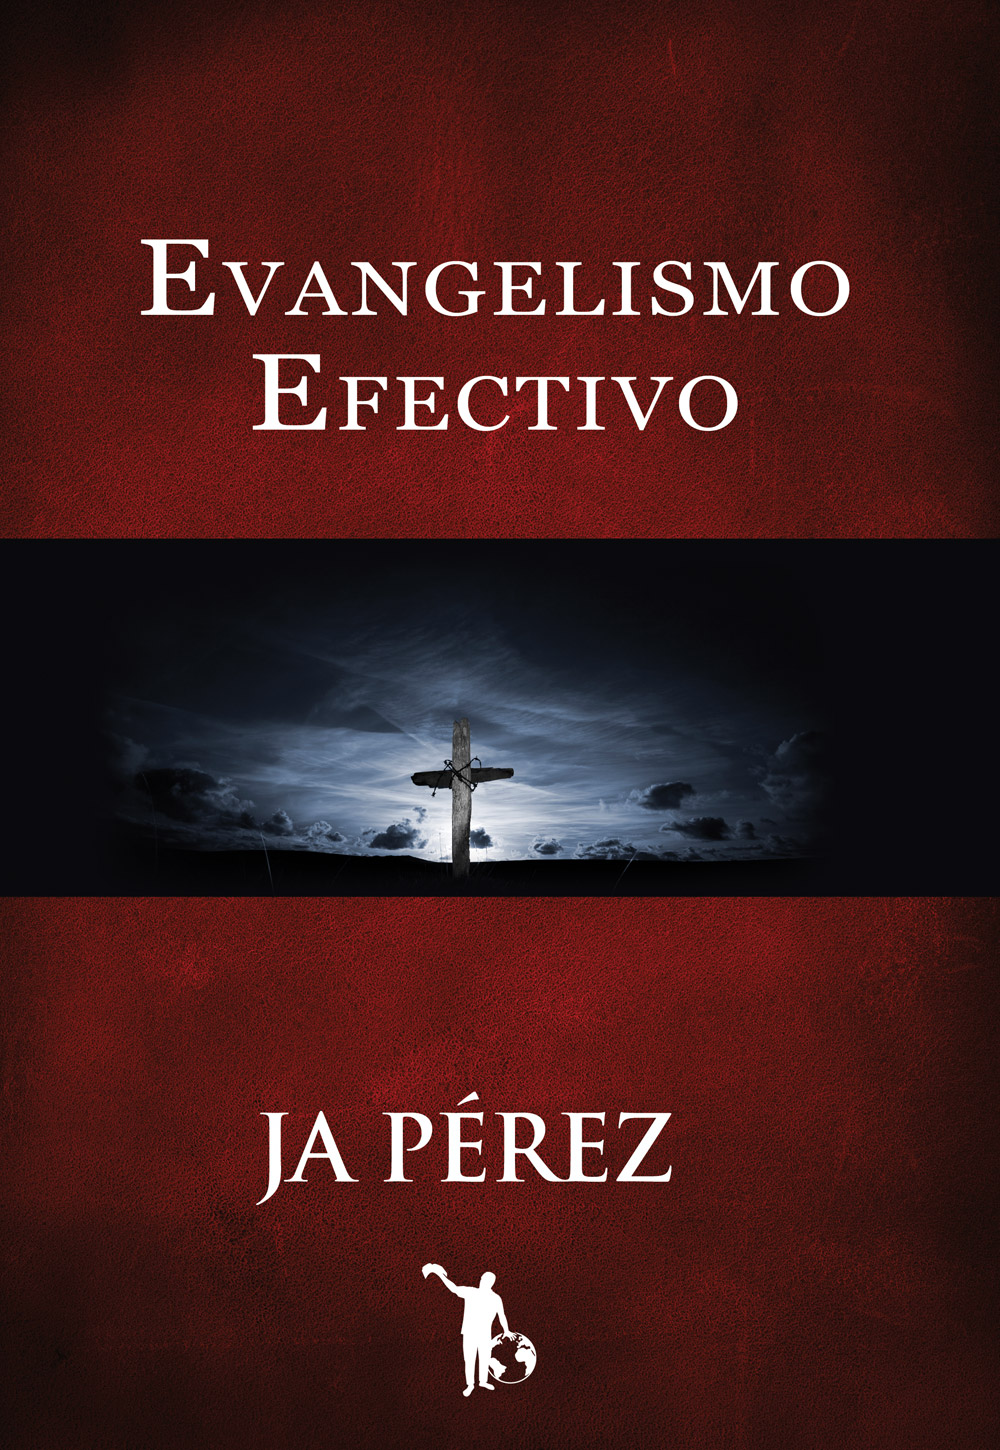 Evangelismo Efectivo: Manual Interactivo Escuela de Evangelismo